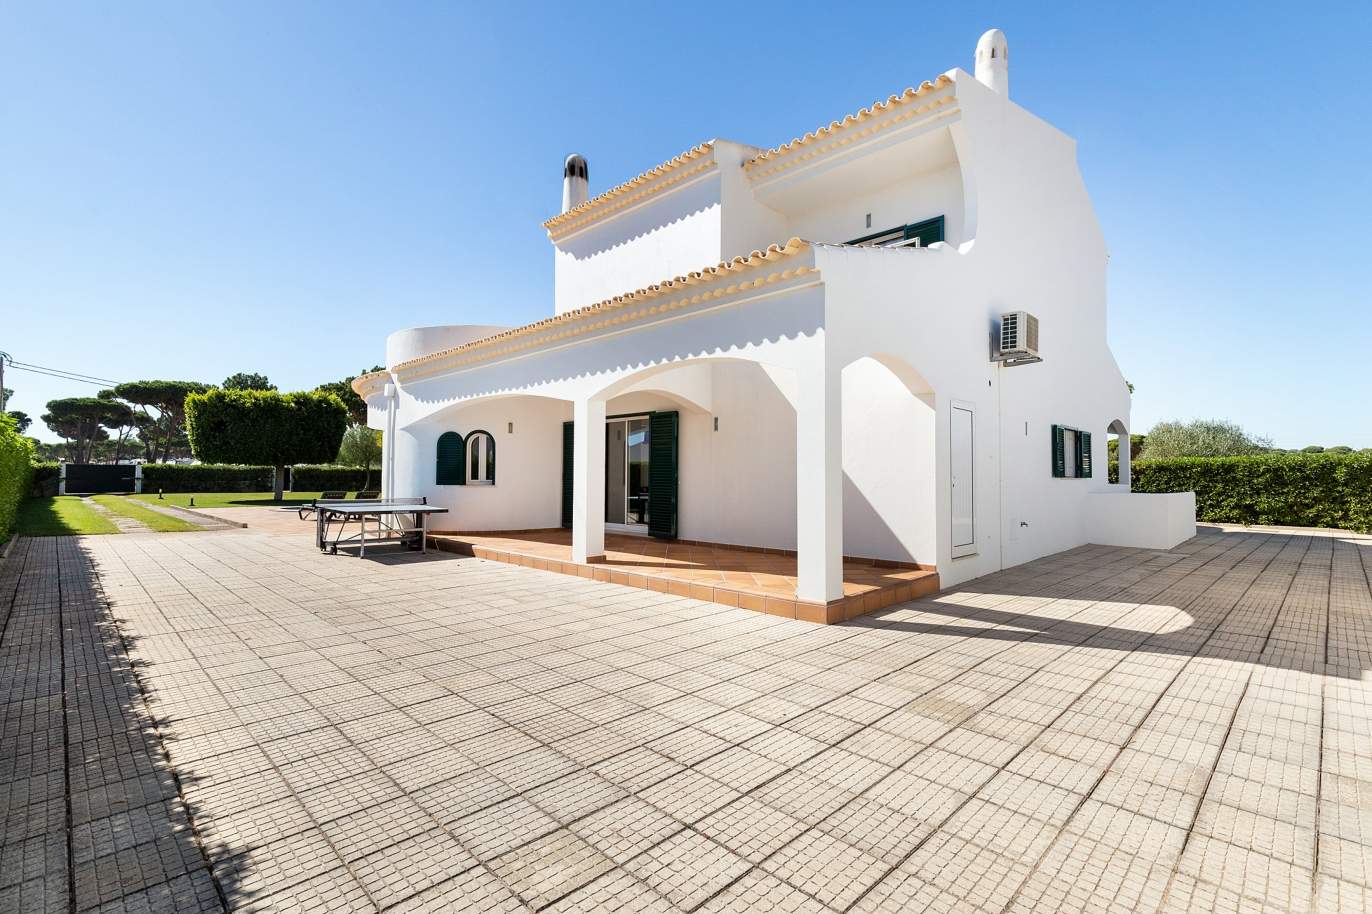 4 bedroom villa with pool and garden, Albufeira, Algarve_180586